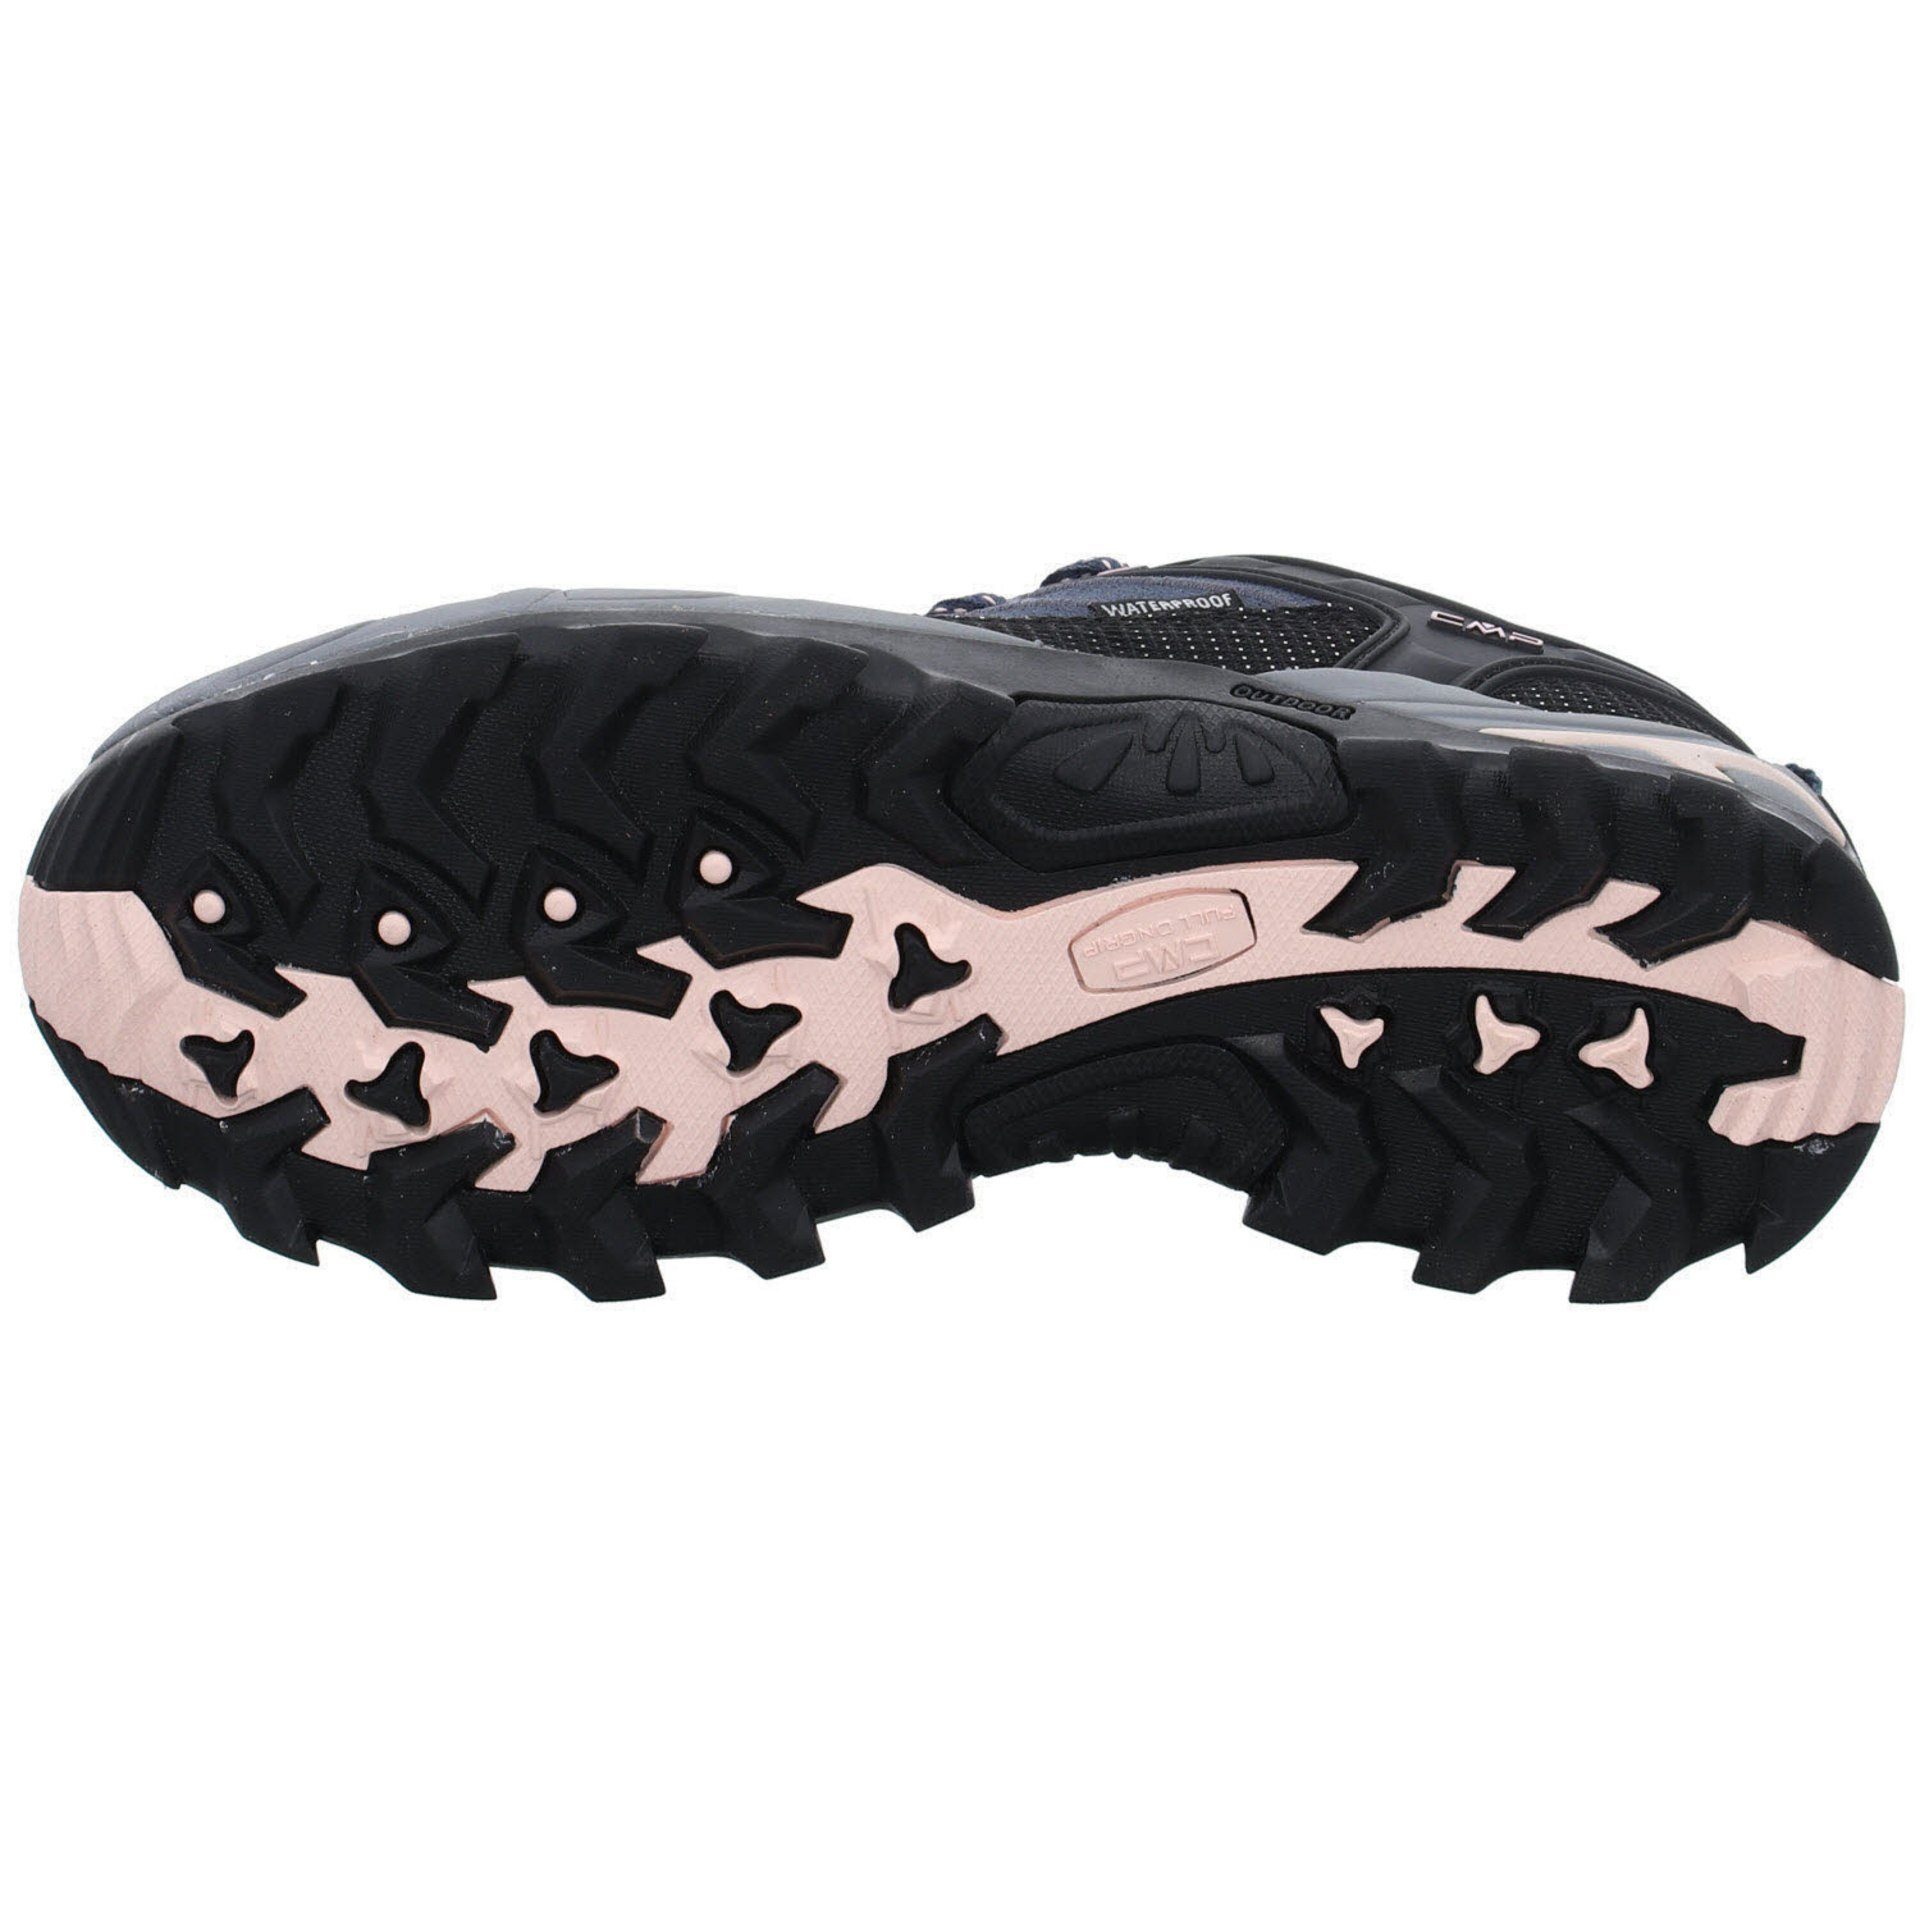 Schuhe Riegel Damen Outdoorschuh Outdoorschuh CMP Outdoor Low asphalt-antracite-rose Leder-/Textilkombination